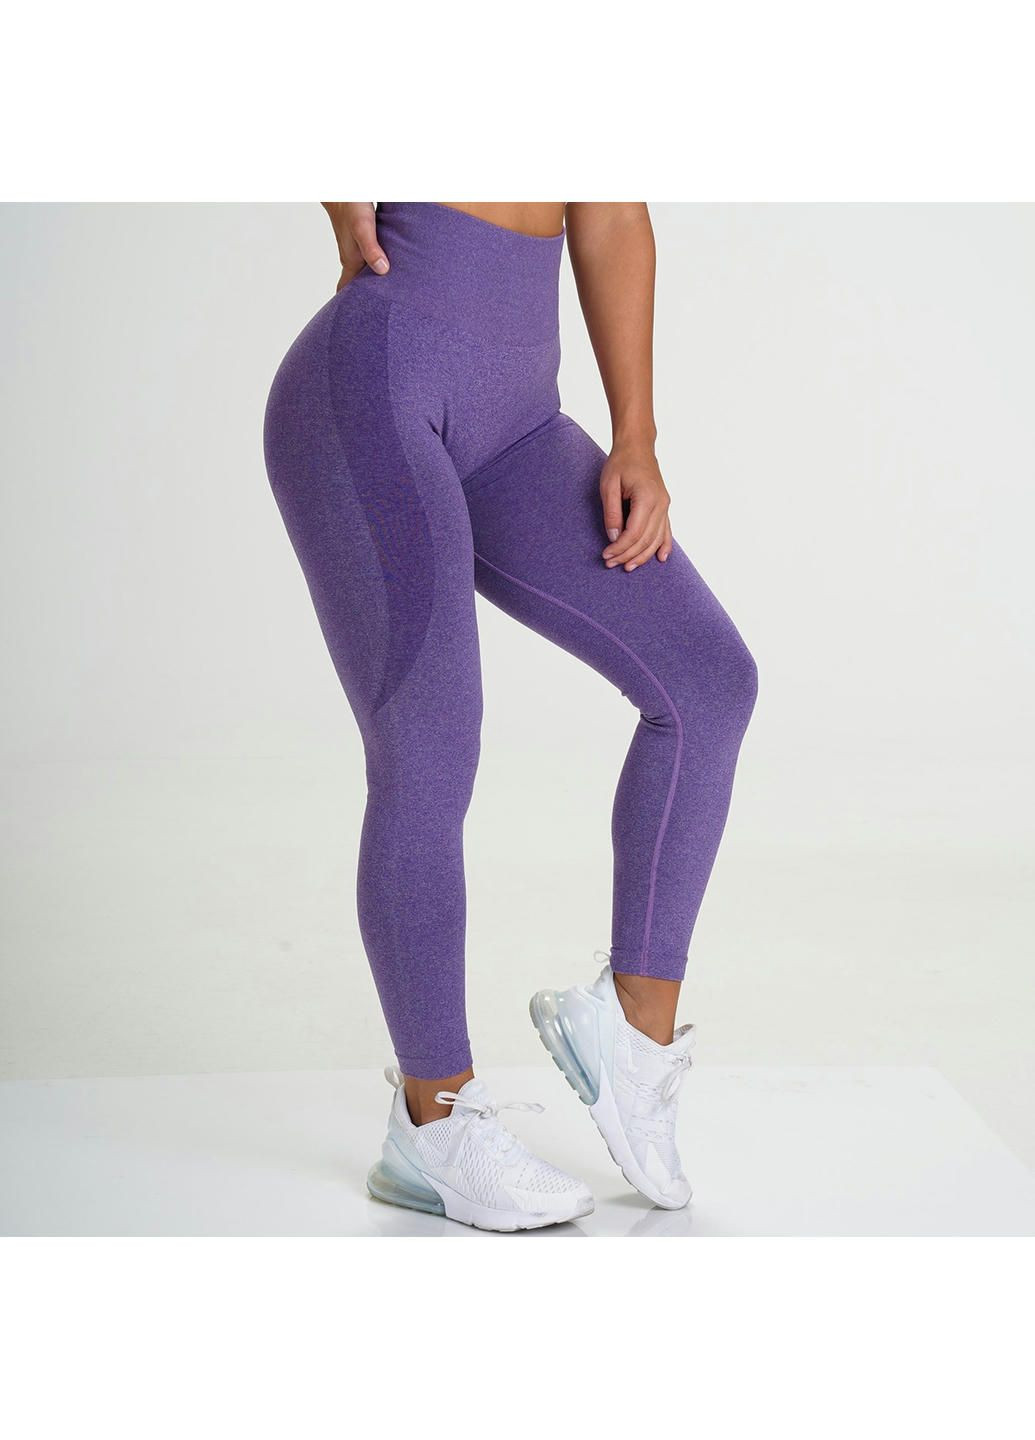 Легінси жіночі спортивні 11480 M фіолетові Fashion (294067203)